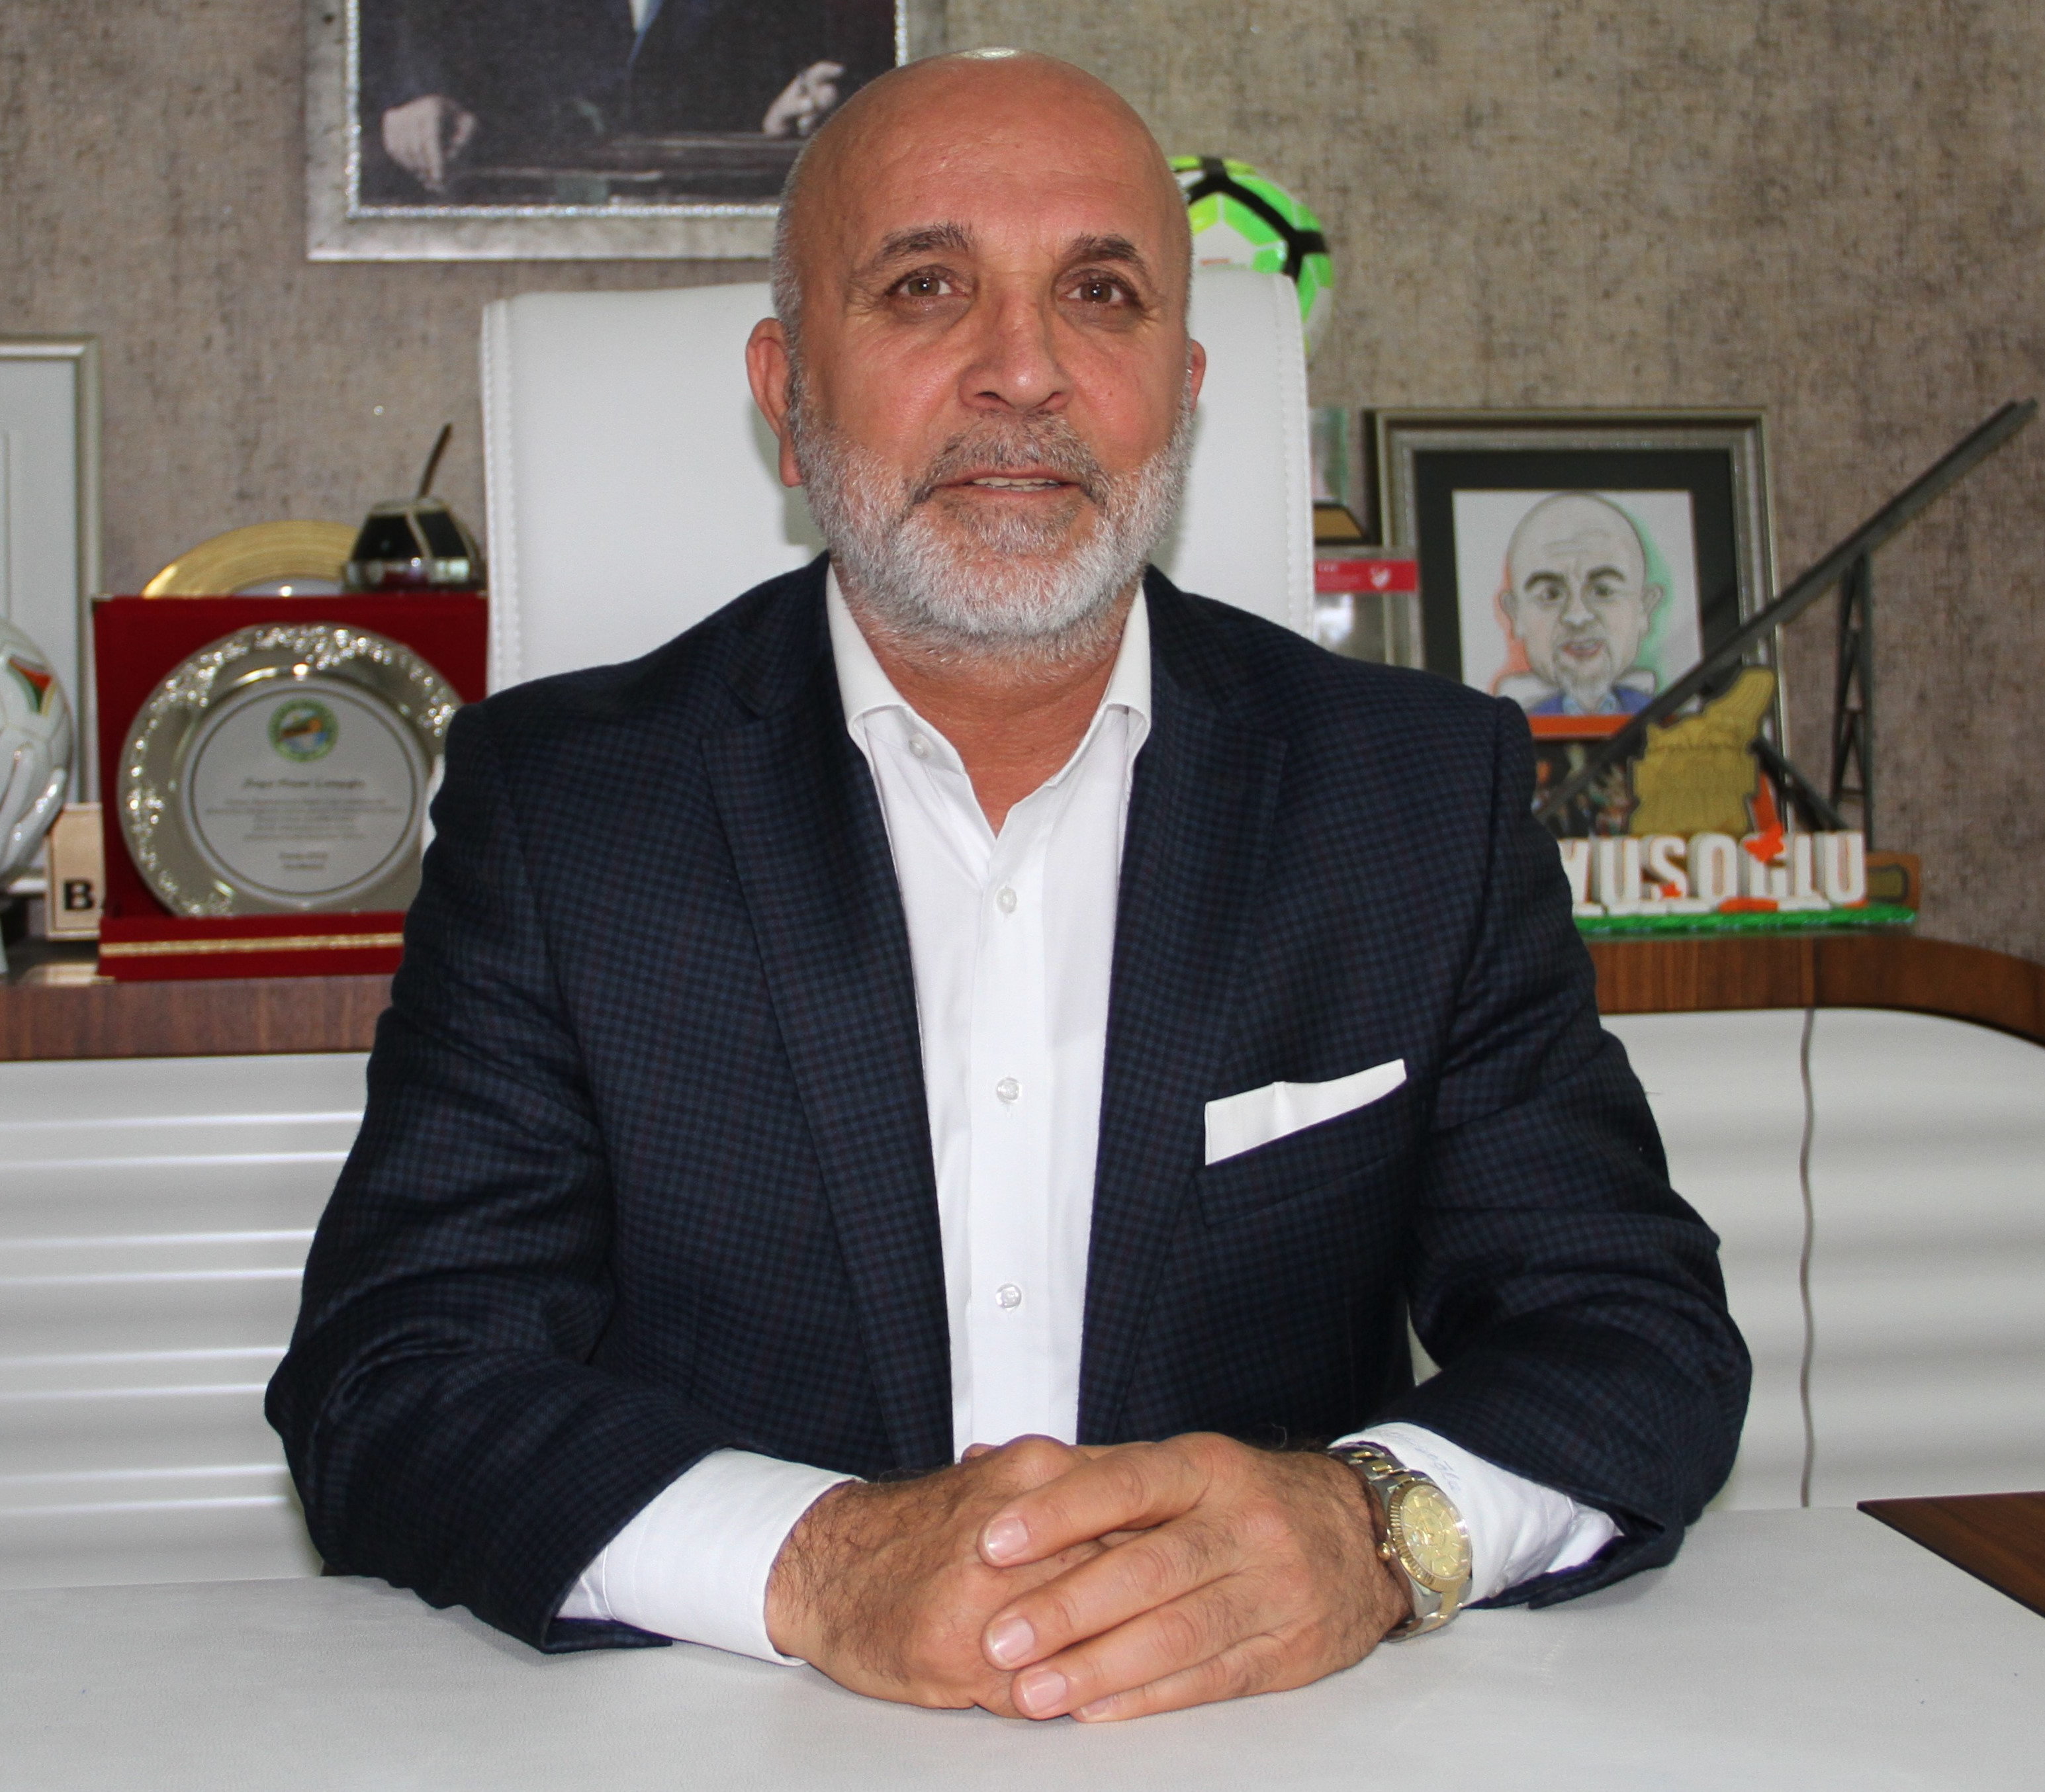 Alanyaspor Başkanı Hasan Çavuşoğlu.